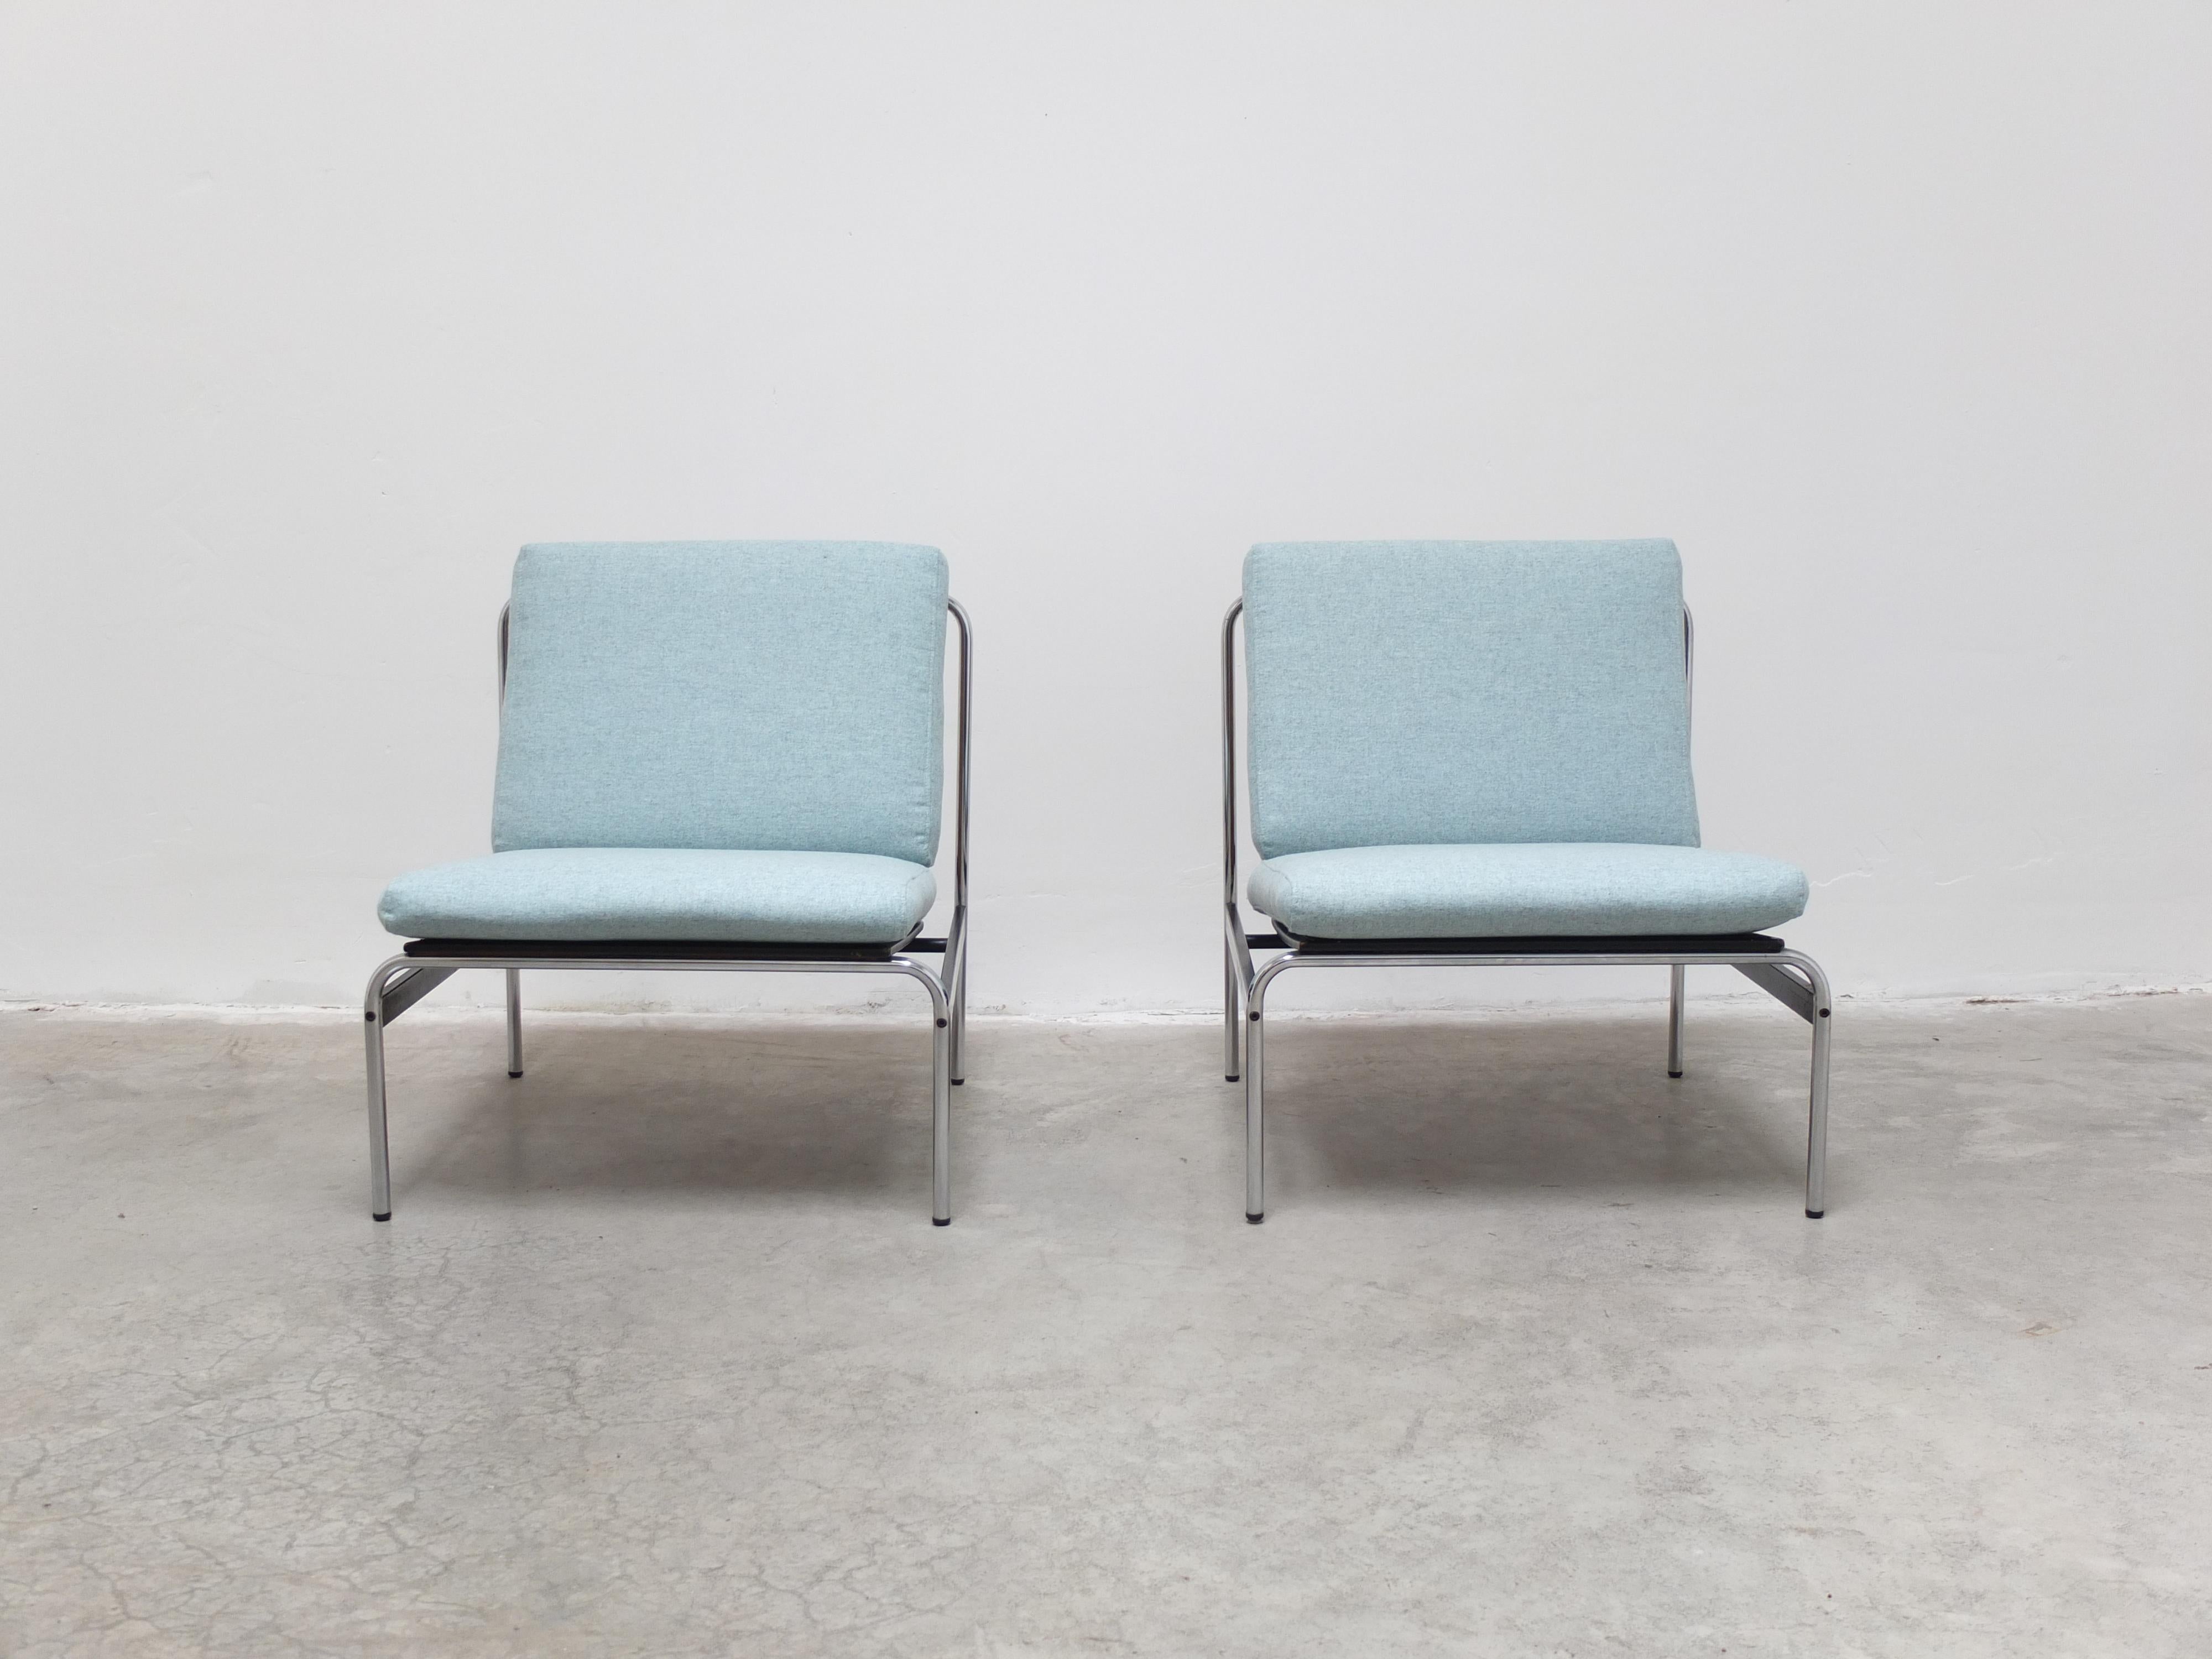 Fantastique paire de chaises de salon modernistes produites aux Pays-Bas dans les années 1960. Ce design est très similaire à certains travaux de Kho Liang pour Artifort, mais jusqu'à présent je n'en ai pas trouvé la preuve, ce qui les rend encore